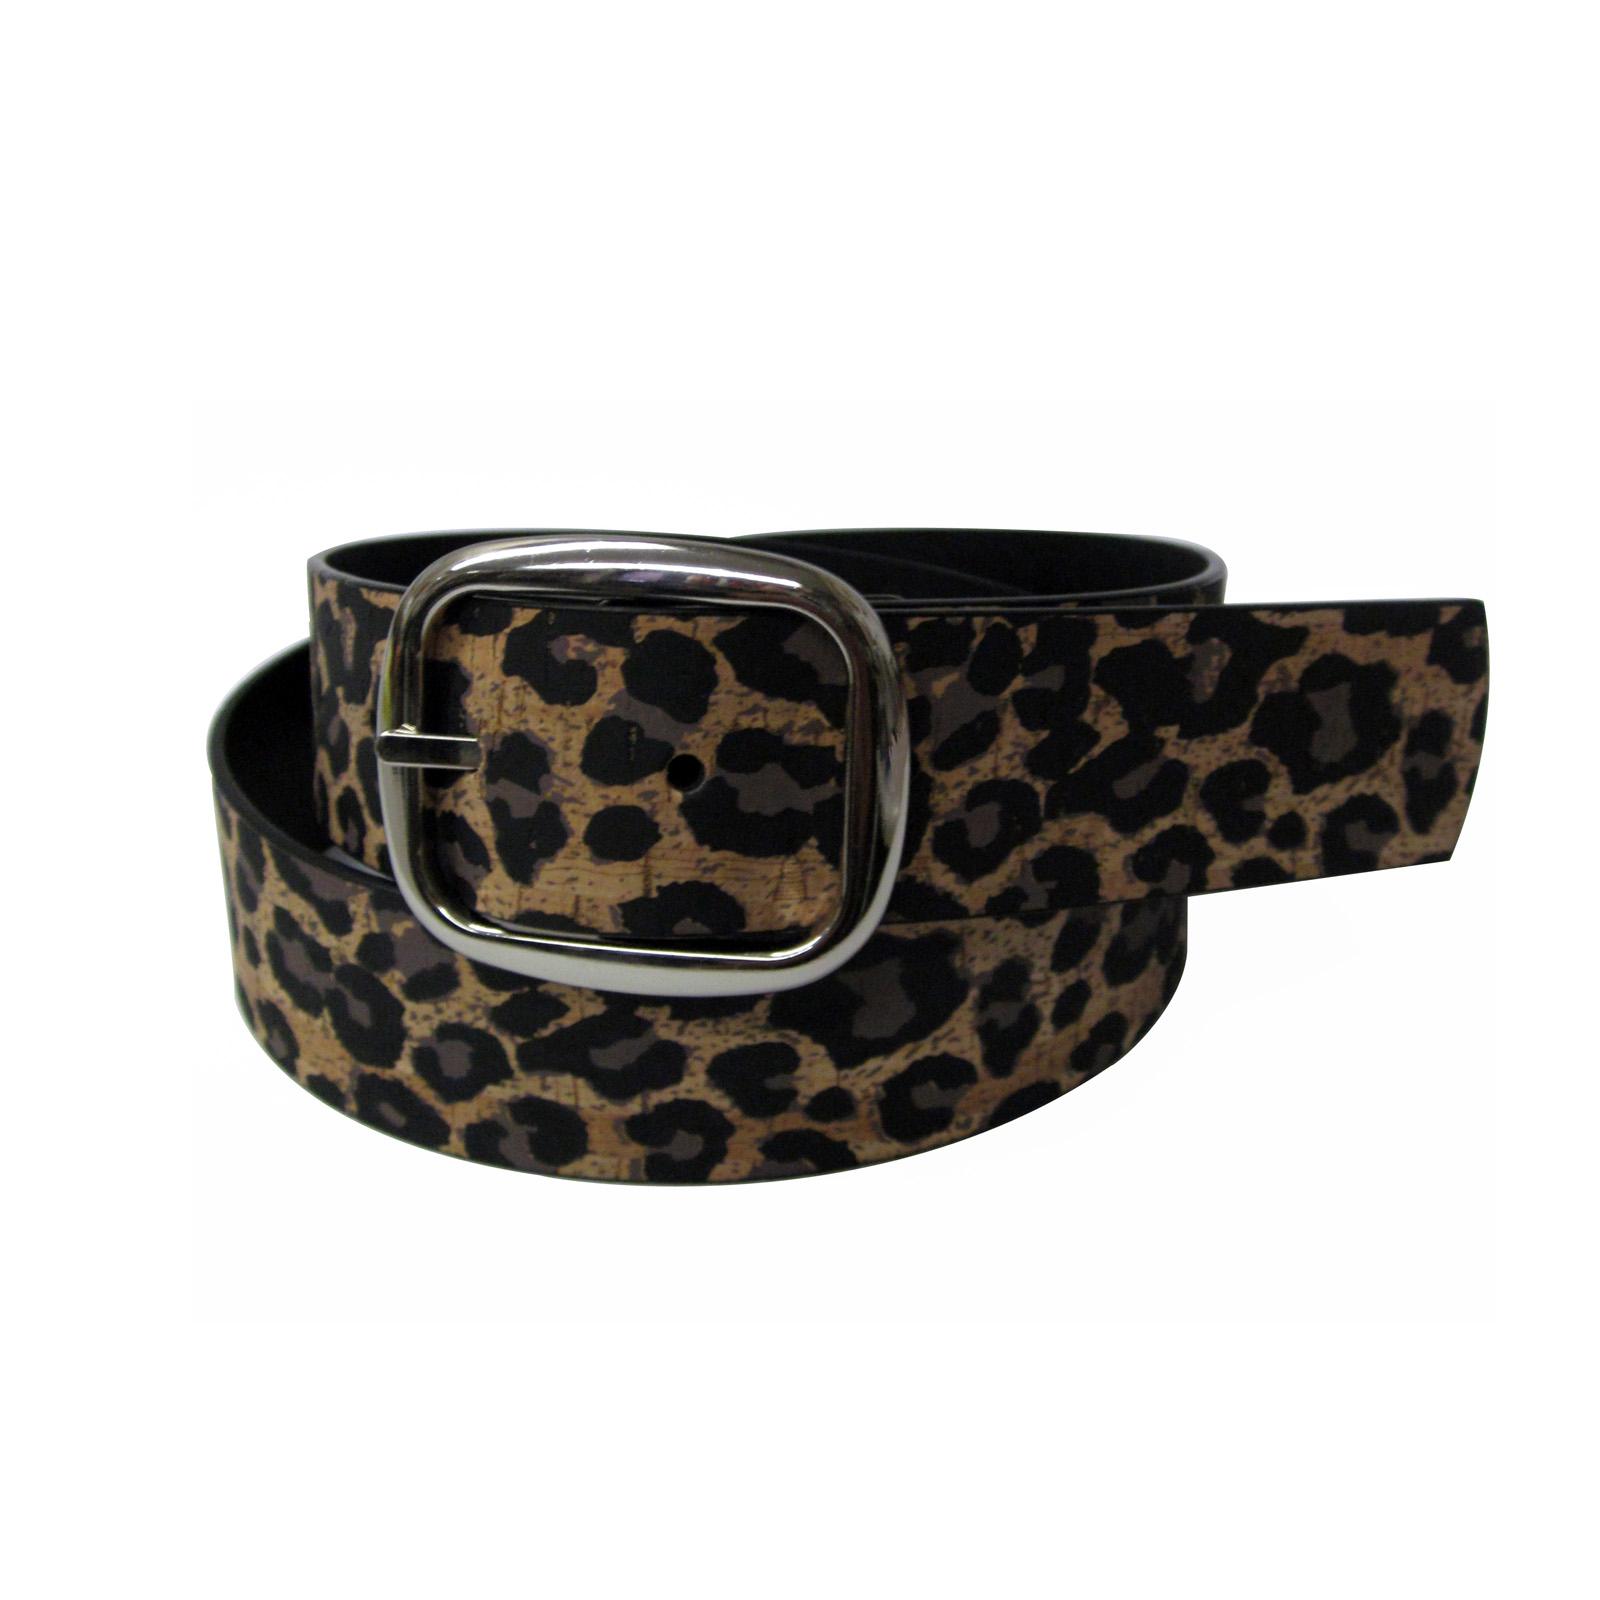 Studio S Women's Reversible Belt - Leopard Print